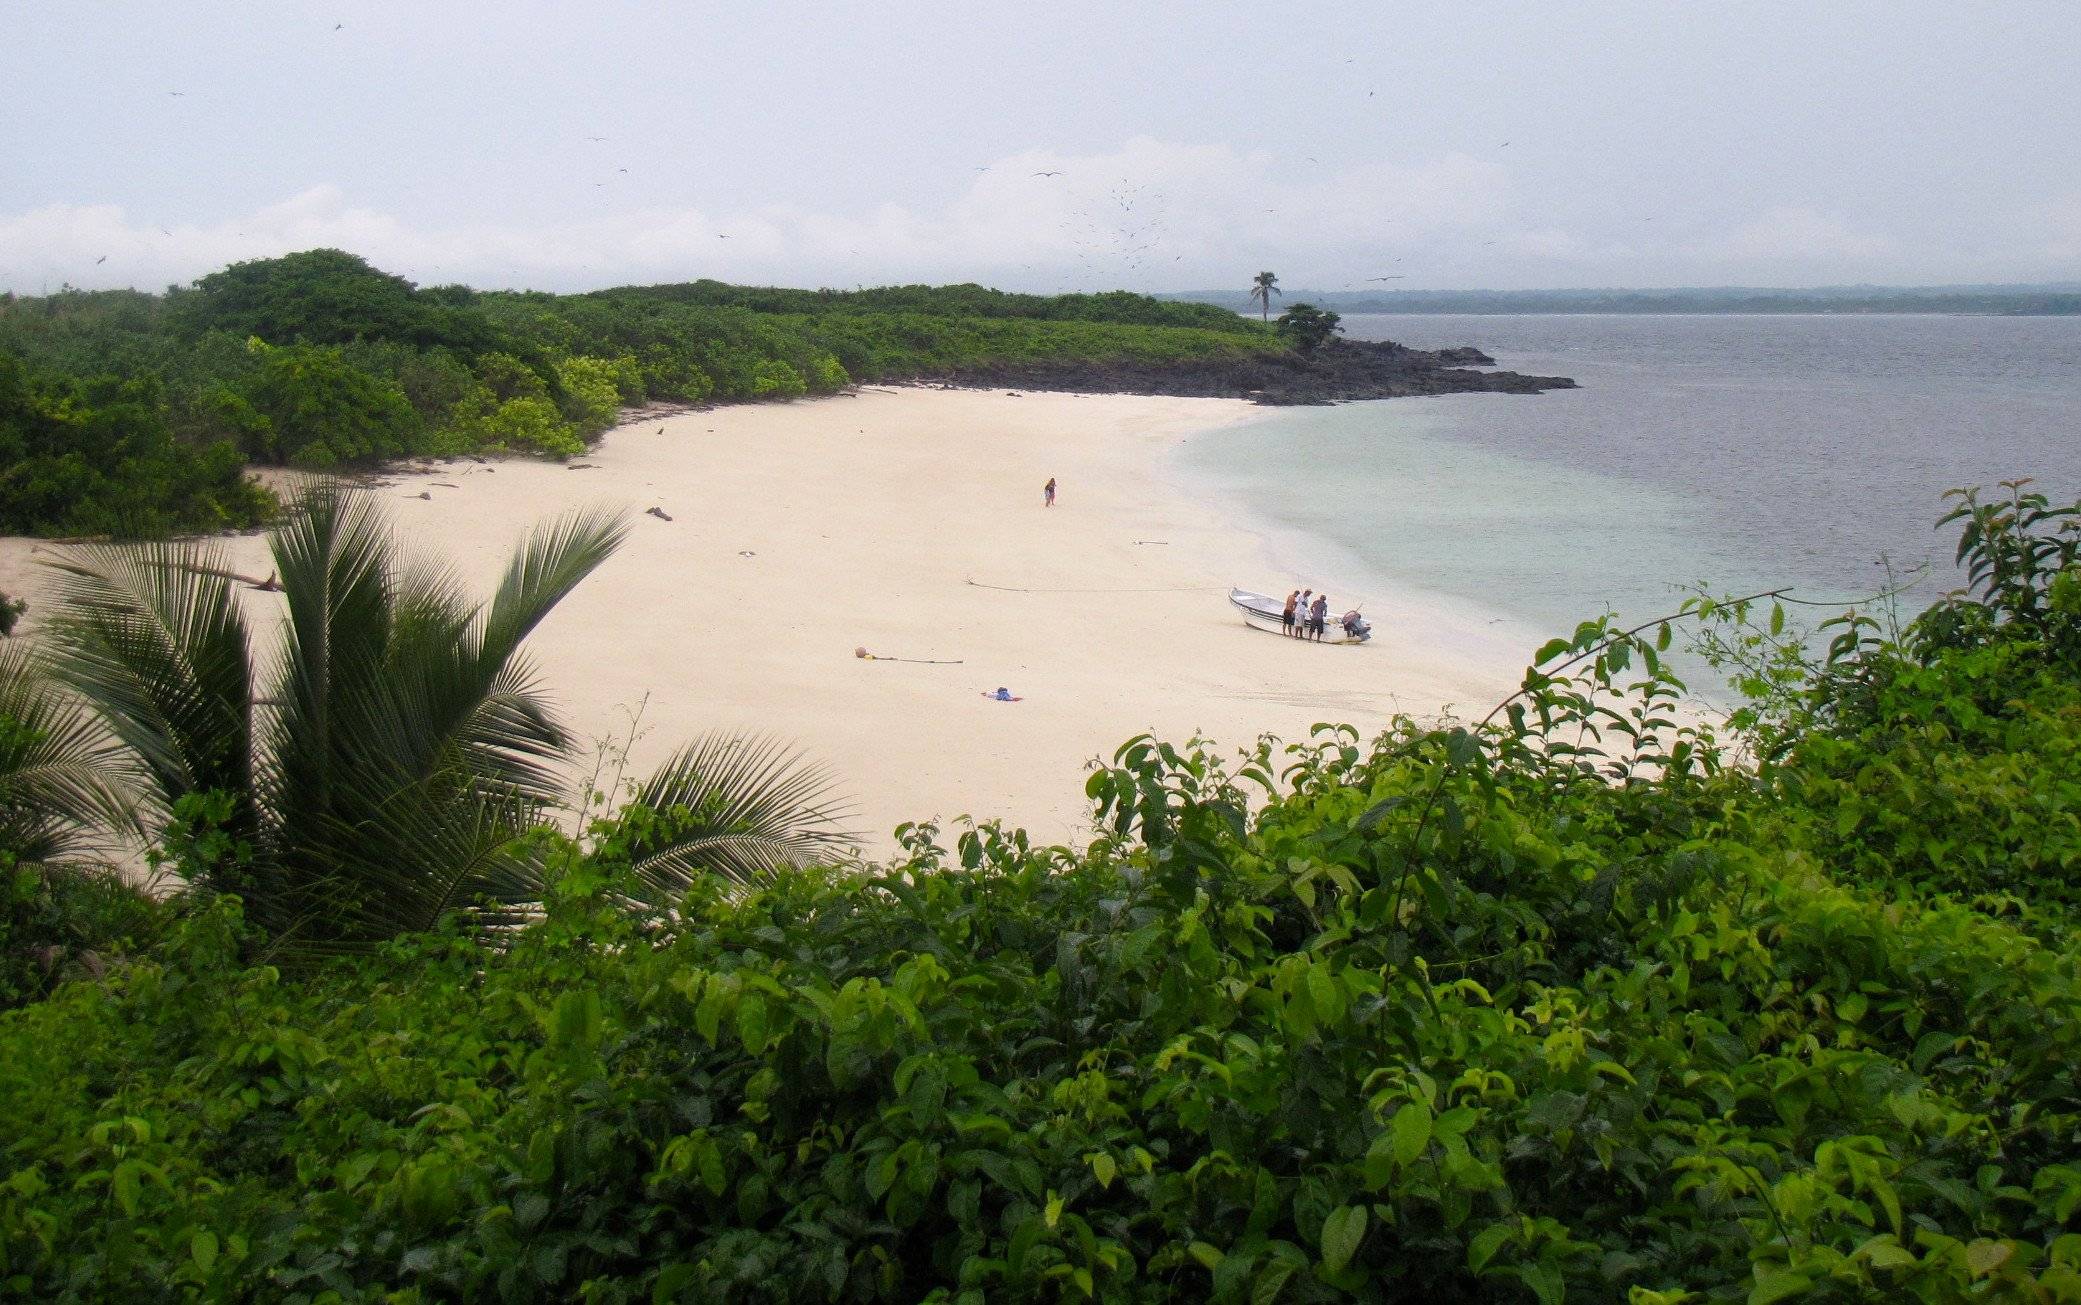 Isla Iguana